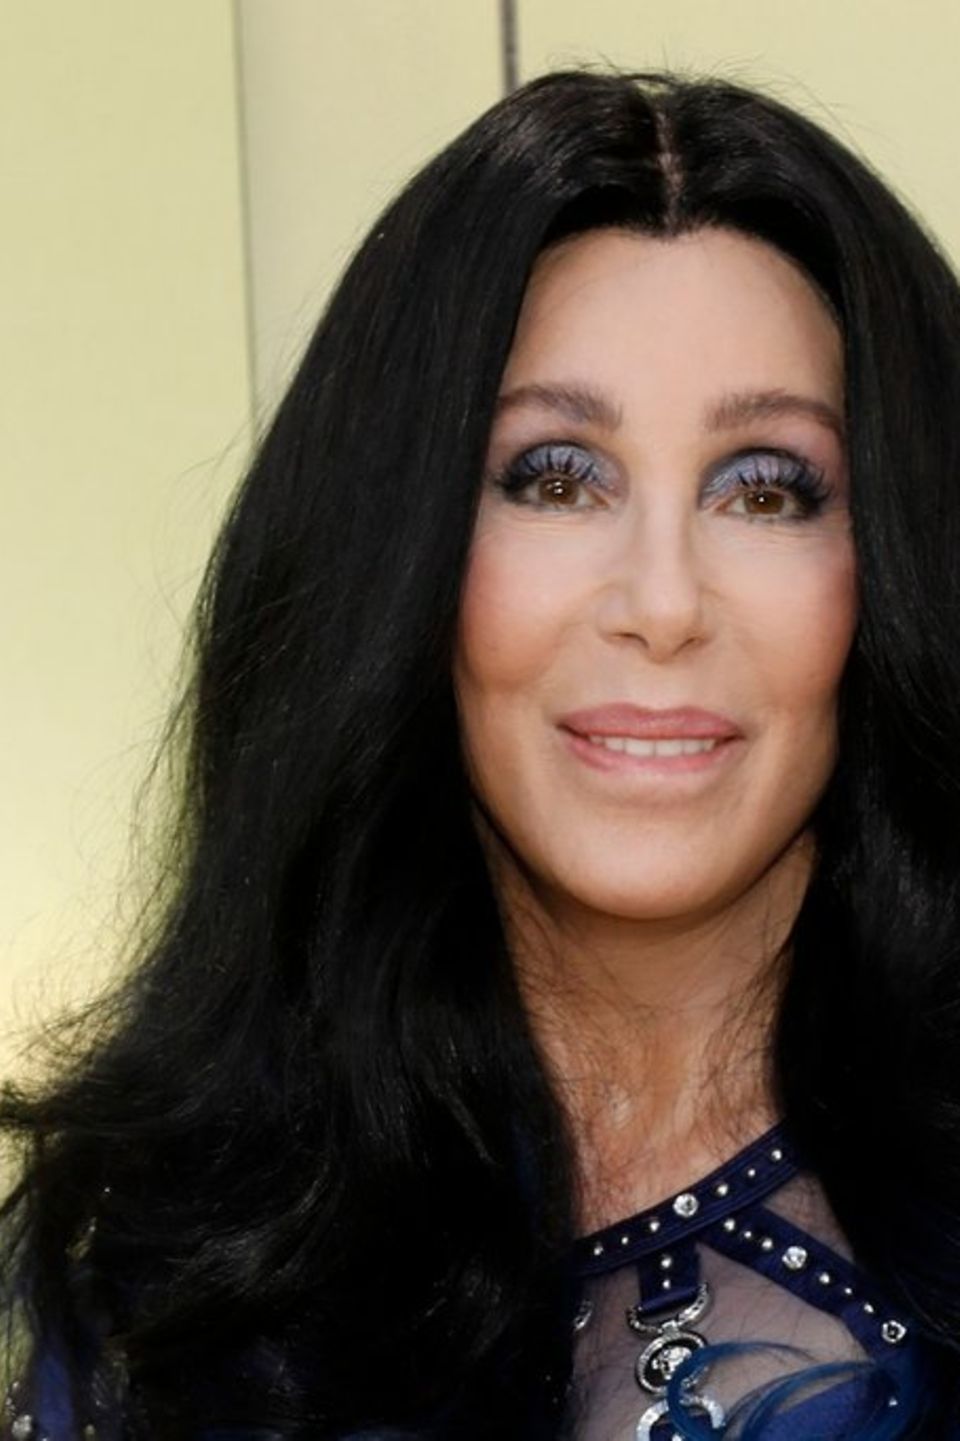 Cher möchte aus den USA auswandern, sollte Donald Trump siegreich sein.